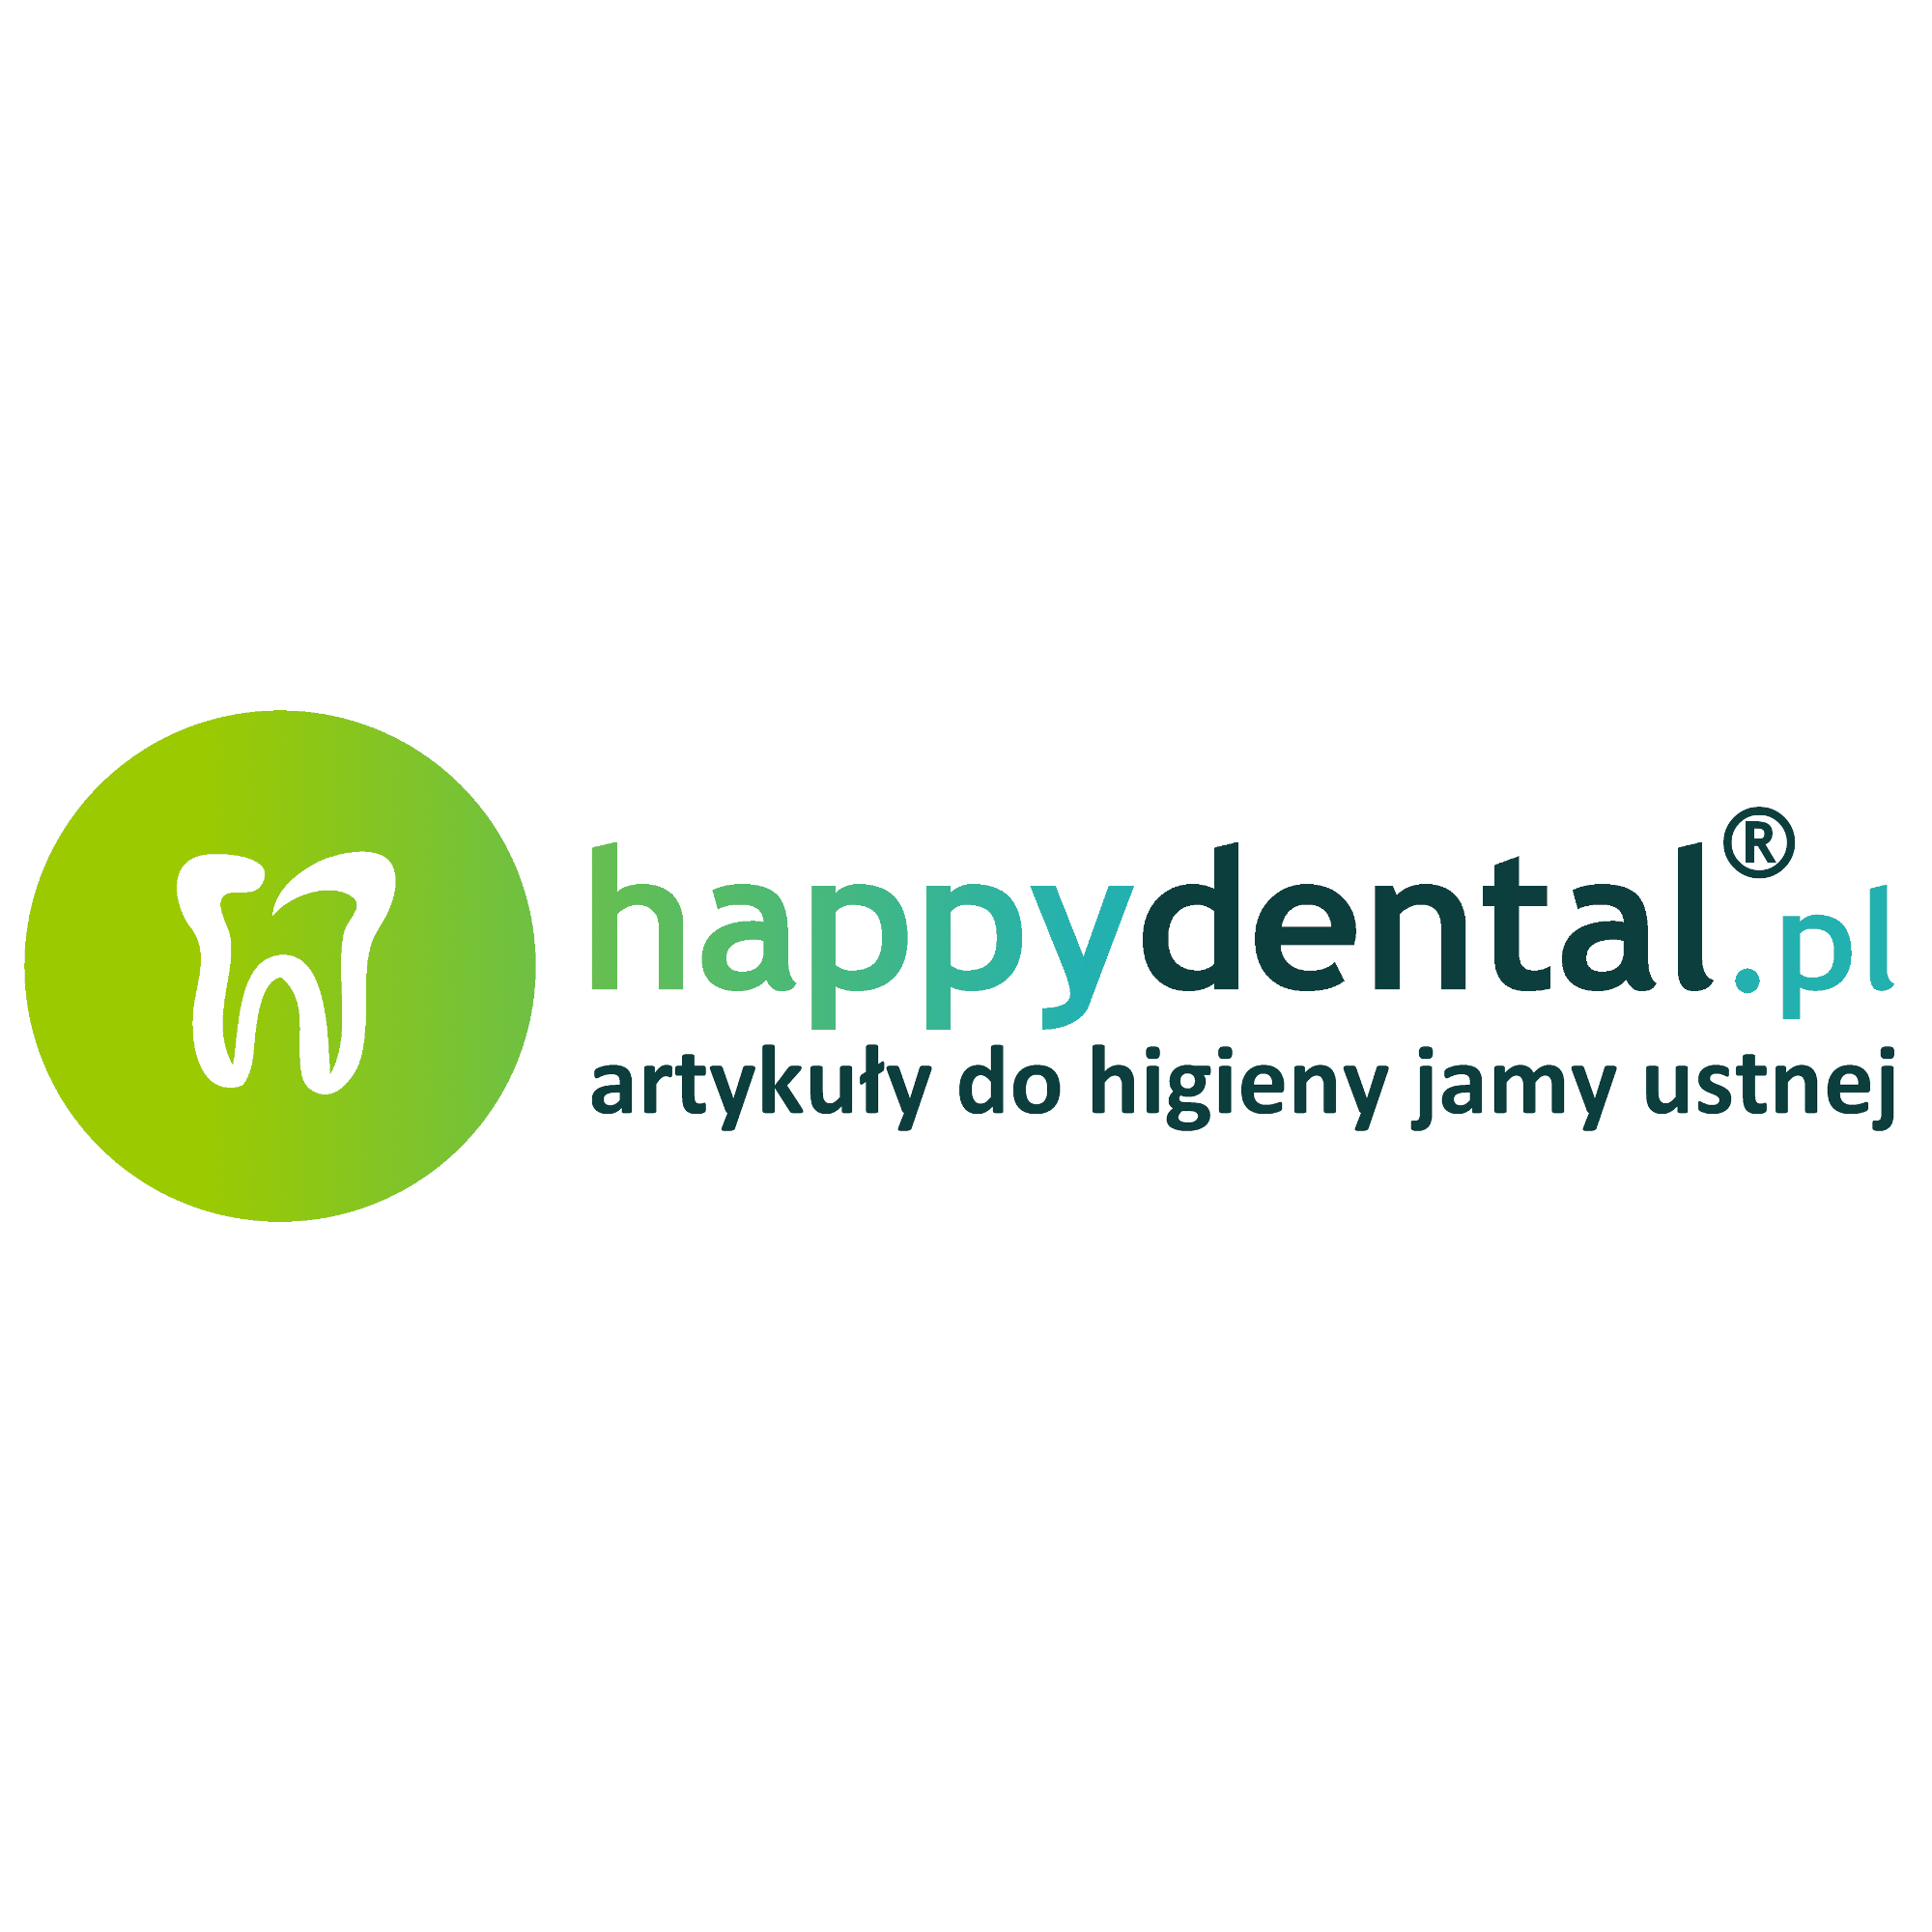 happydental.pl